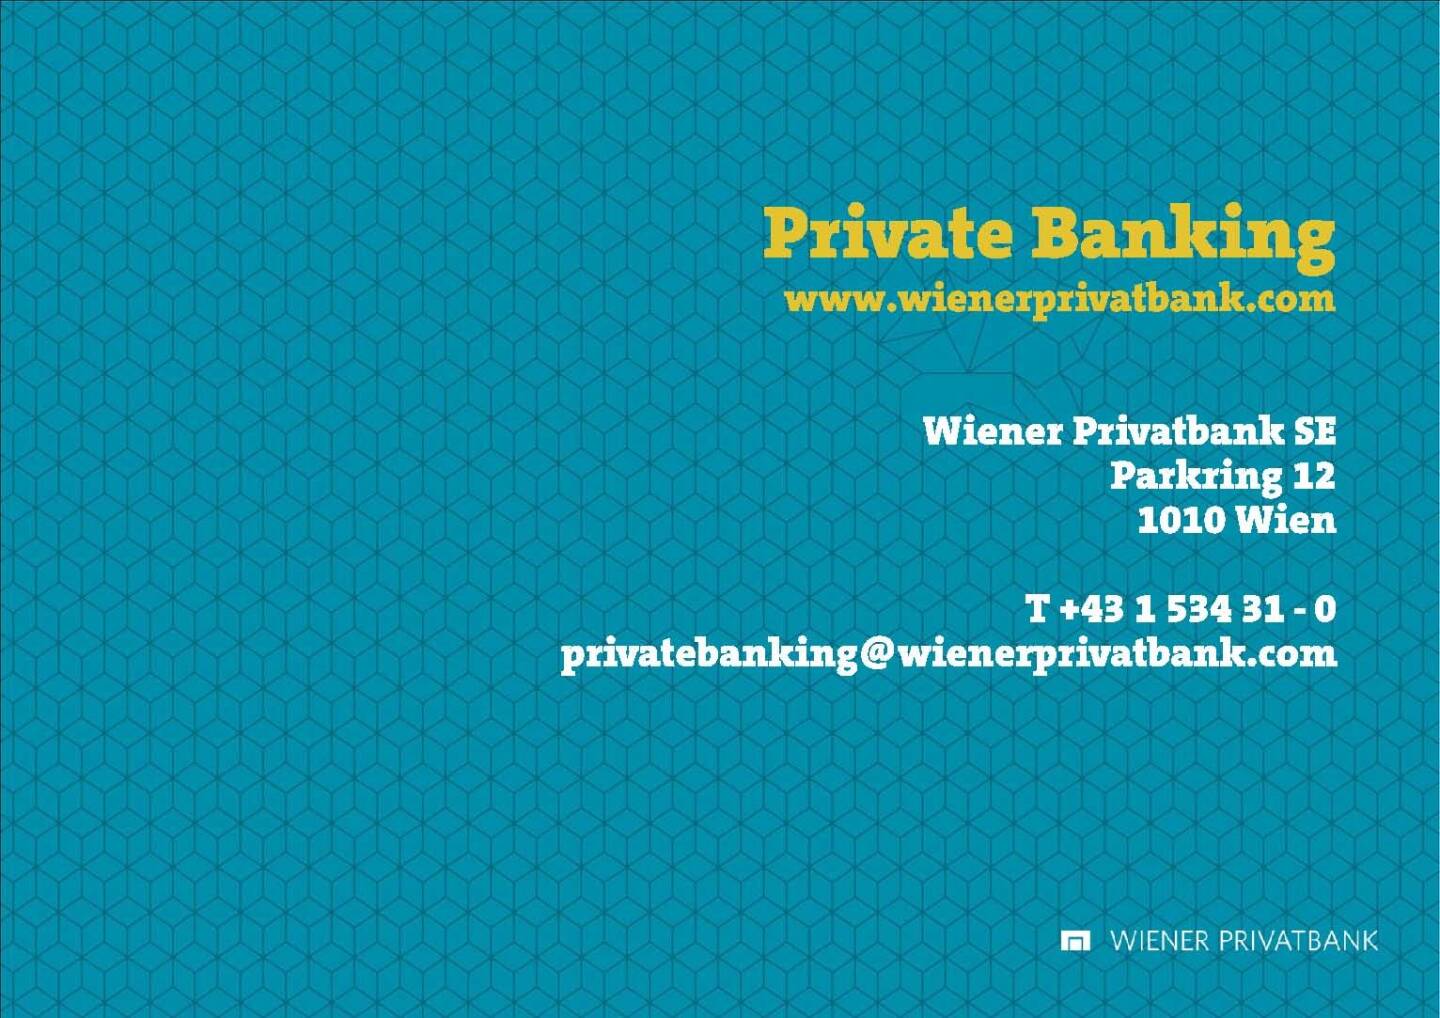 Präsentation Wiener Privatbank - Privates Banking